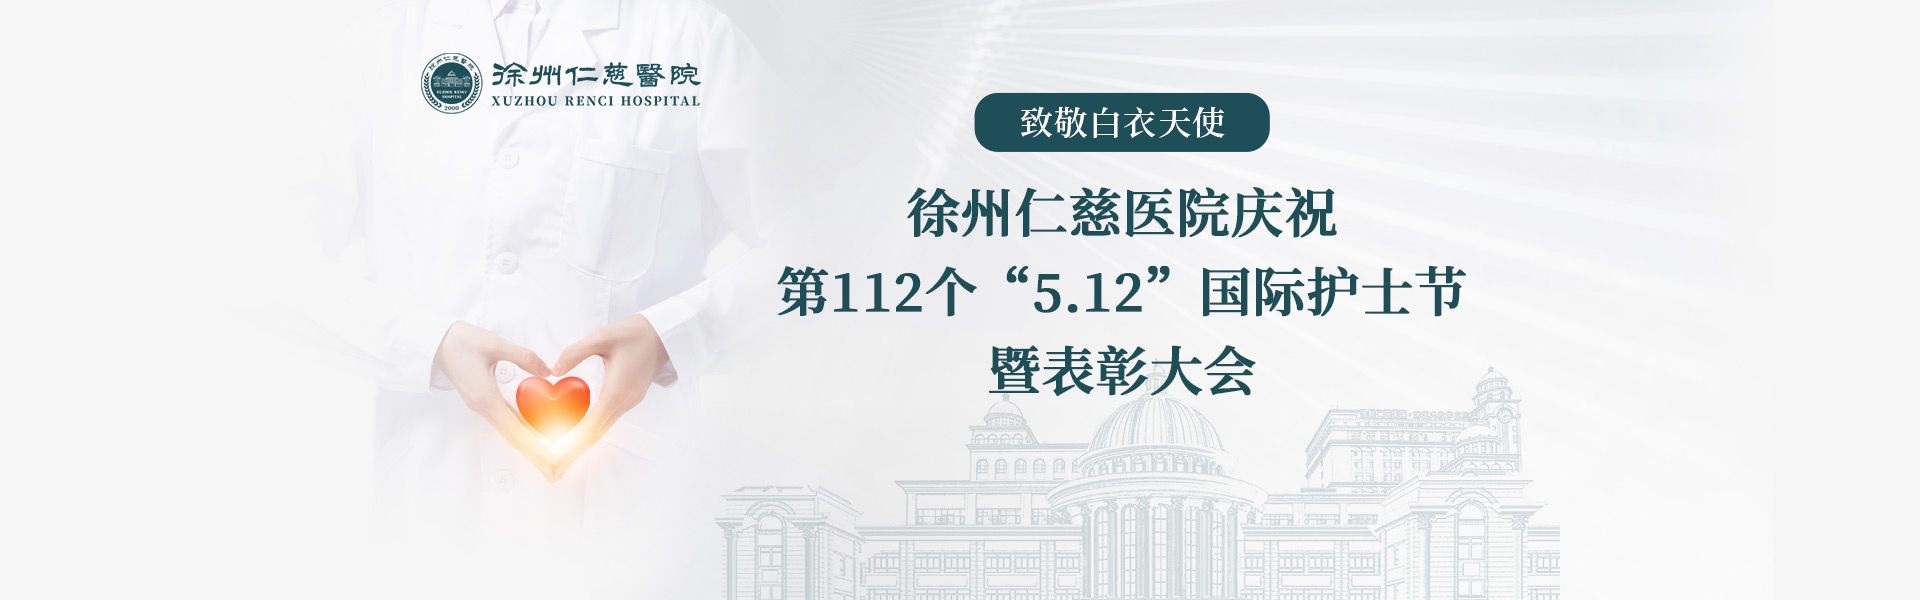 致敬白衣天使丨我院庆祝第112个“5.12”国际护士节暨表彰大会